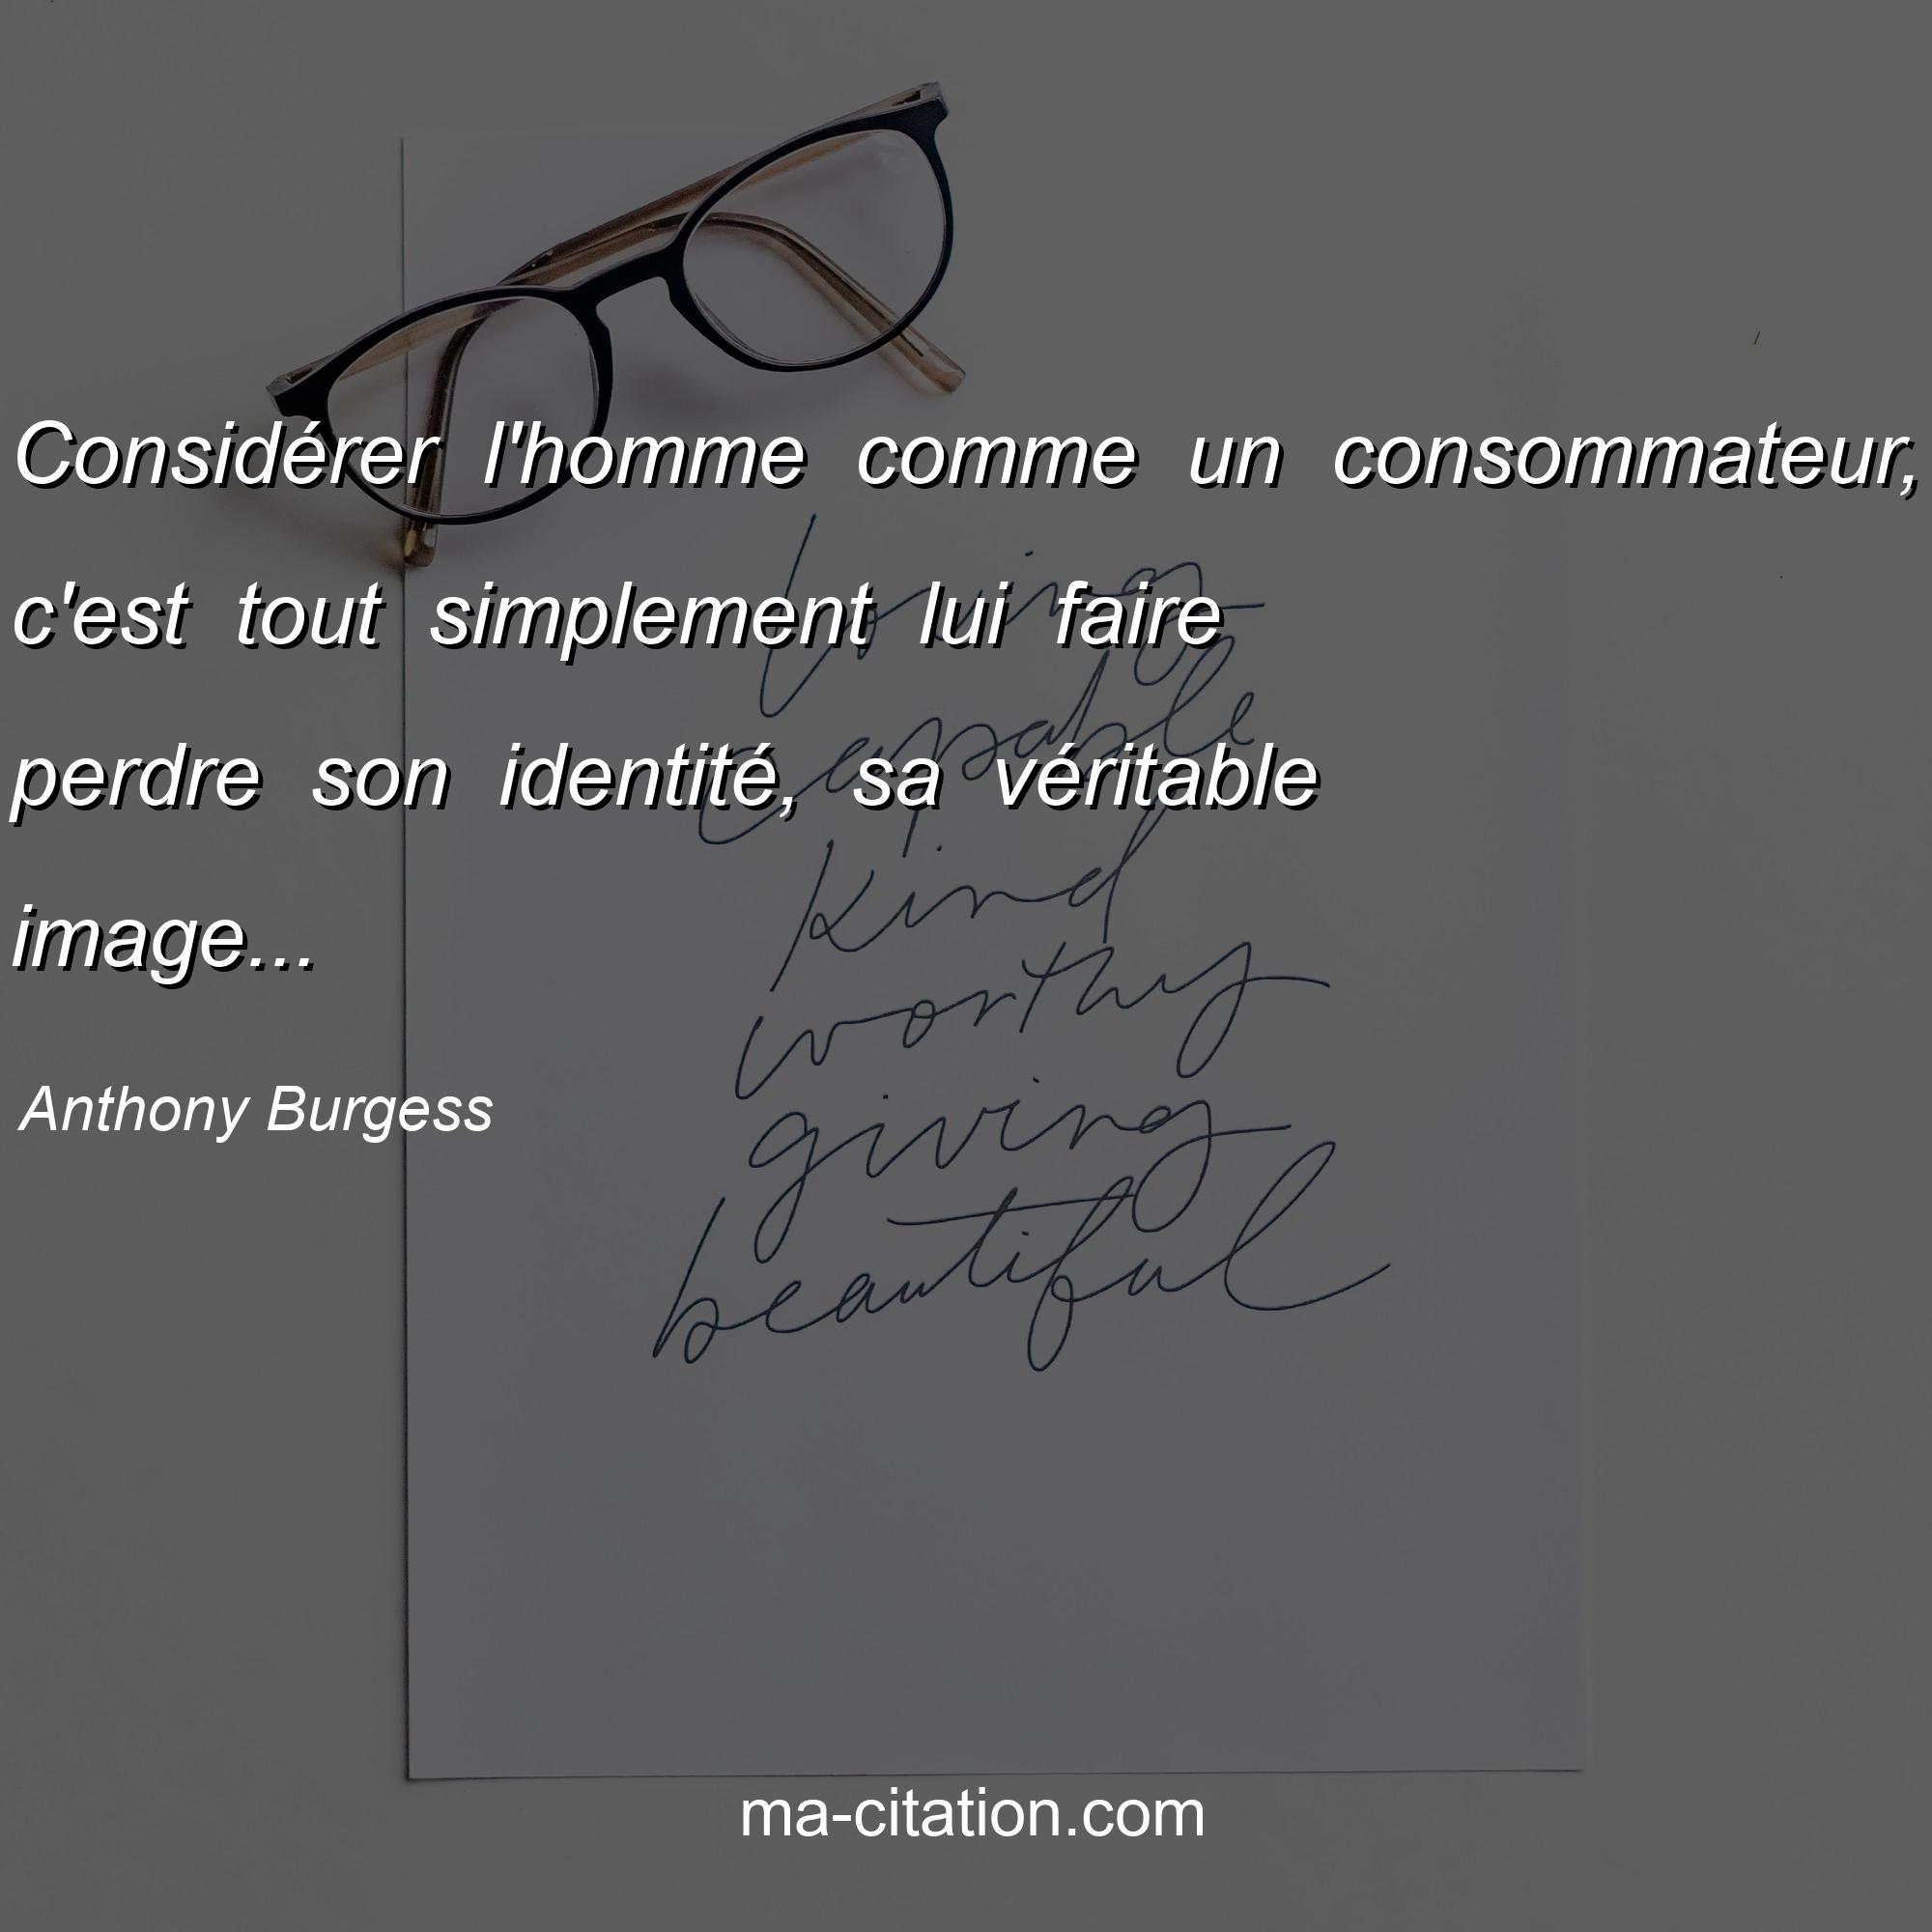 Anthony Burgess : Considérer l'homme comme un consommateur, c'est tout simplement lui faire perdre son identité, sa véritable image...